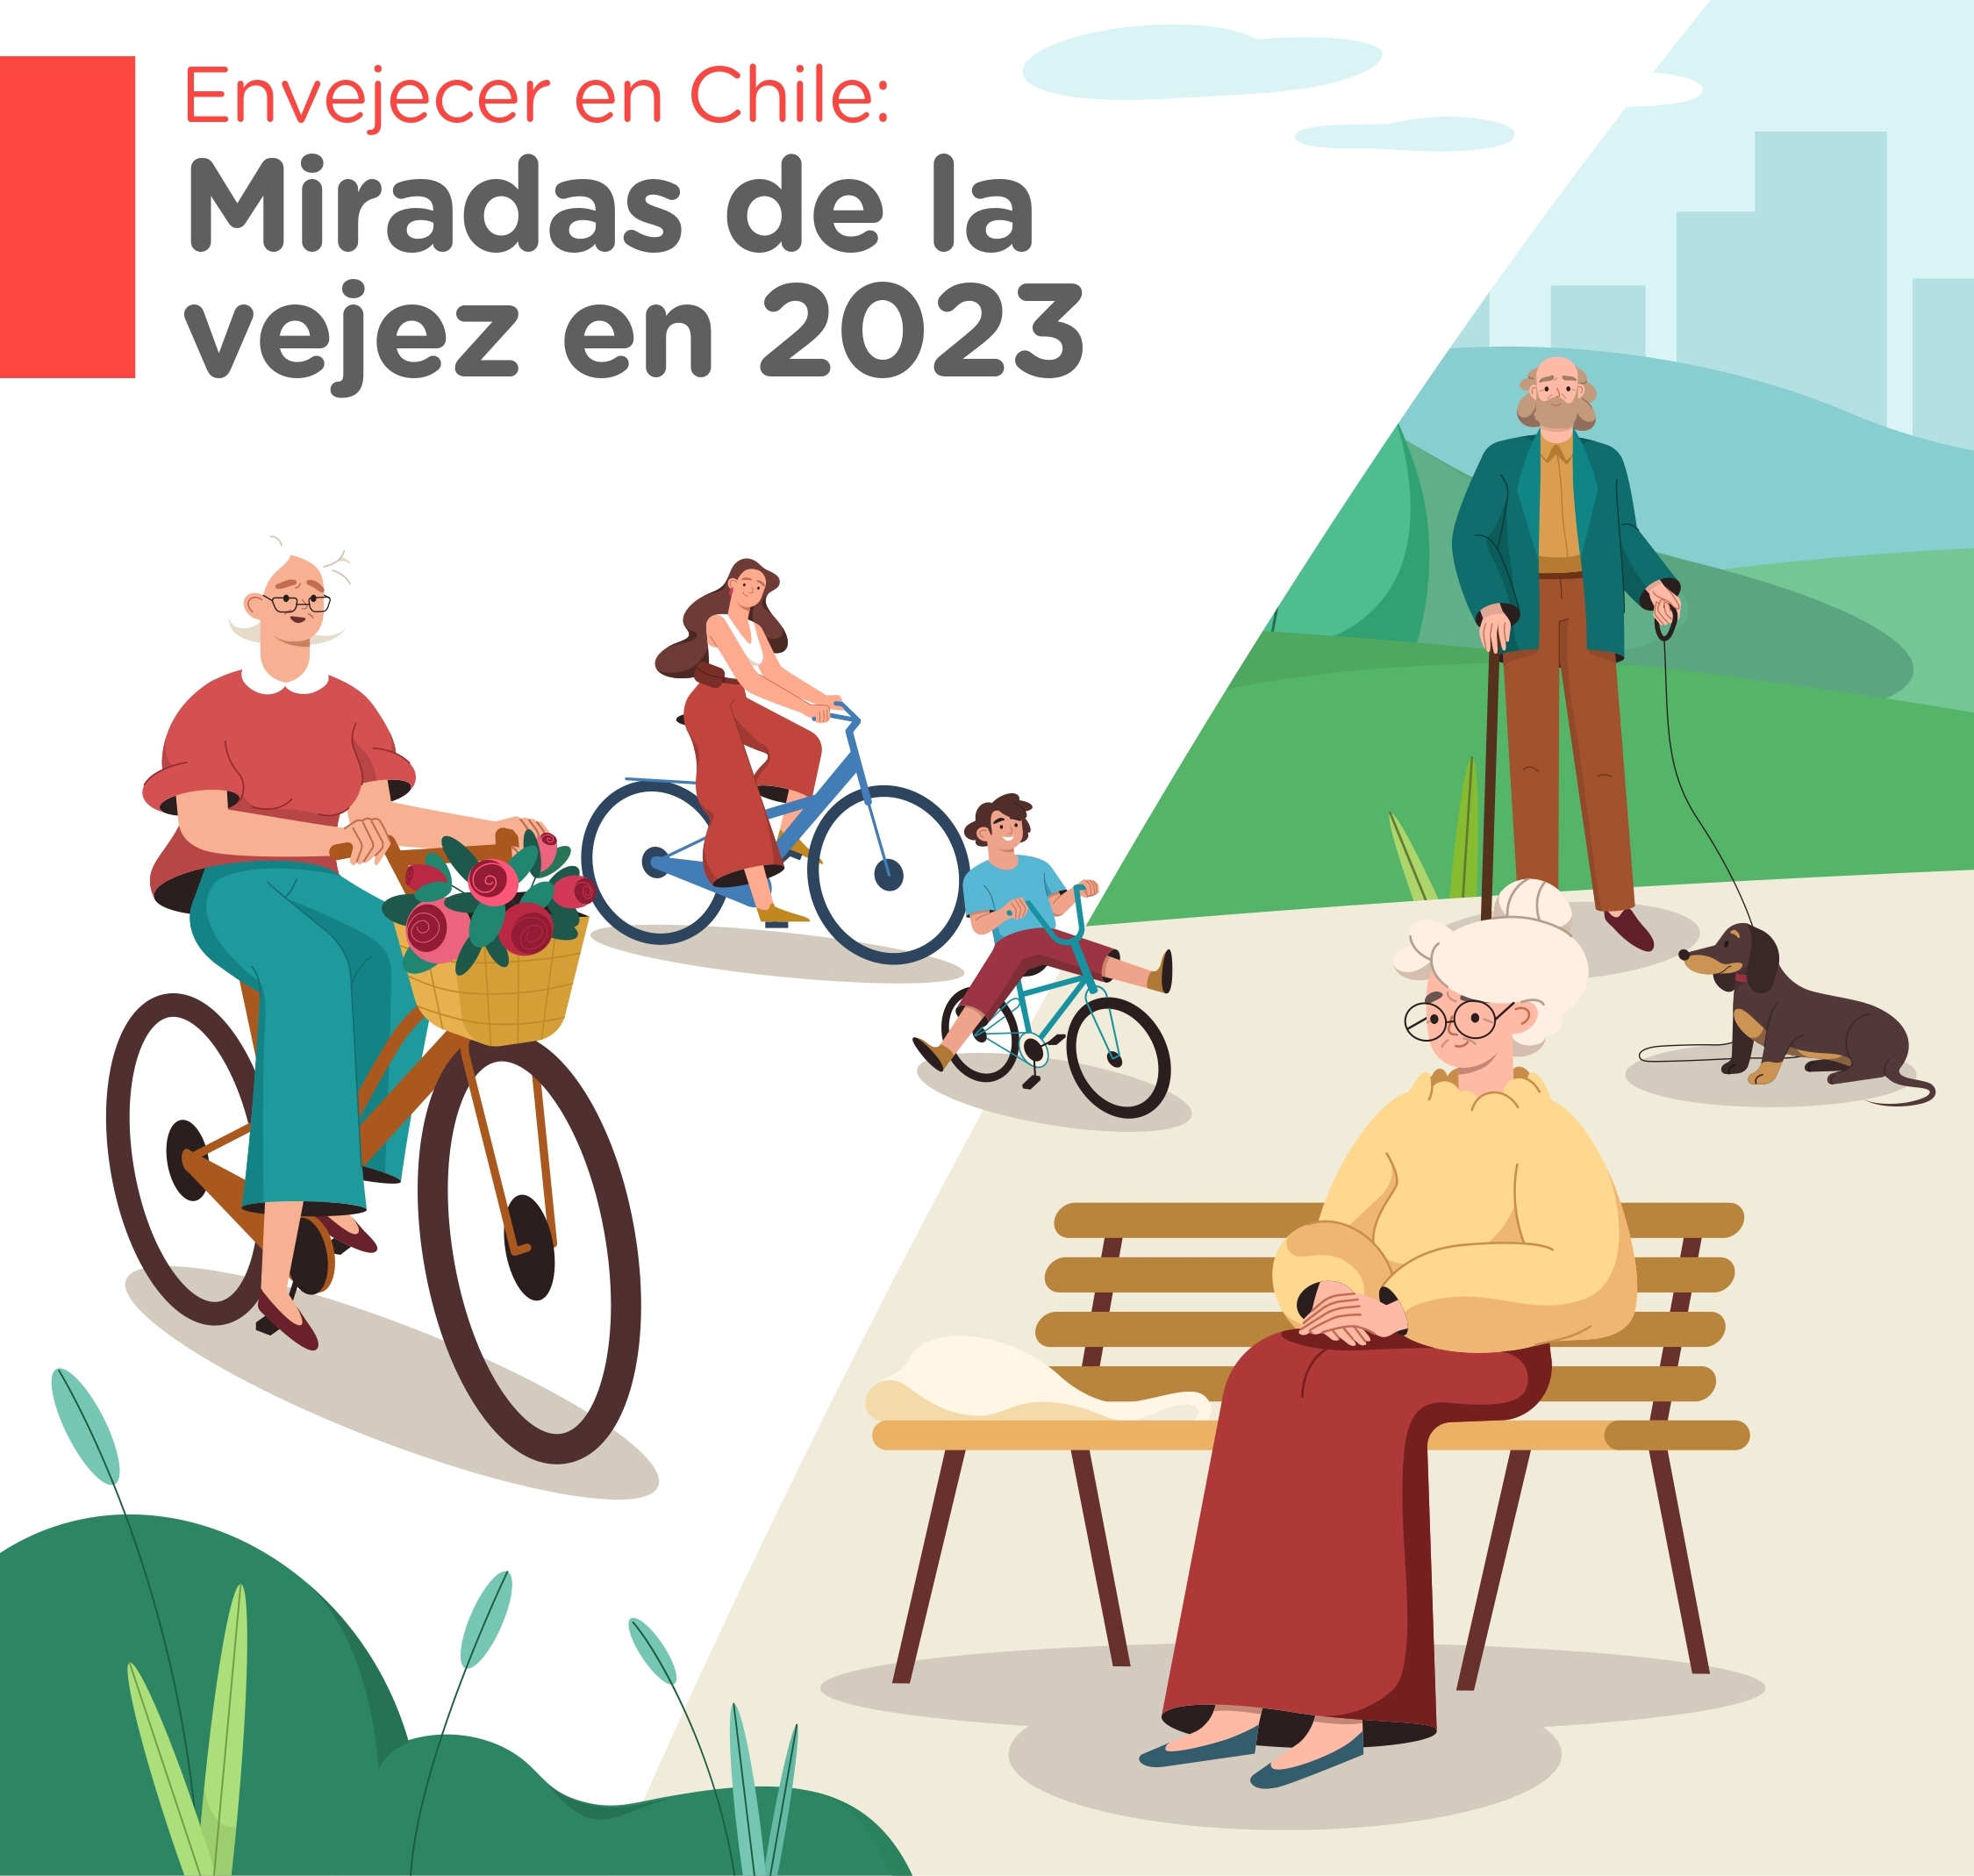 Reporte “Envejecer en Chile Miradas de la vejez en 2023”